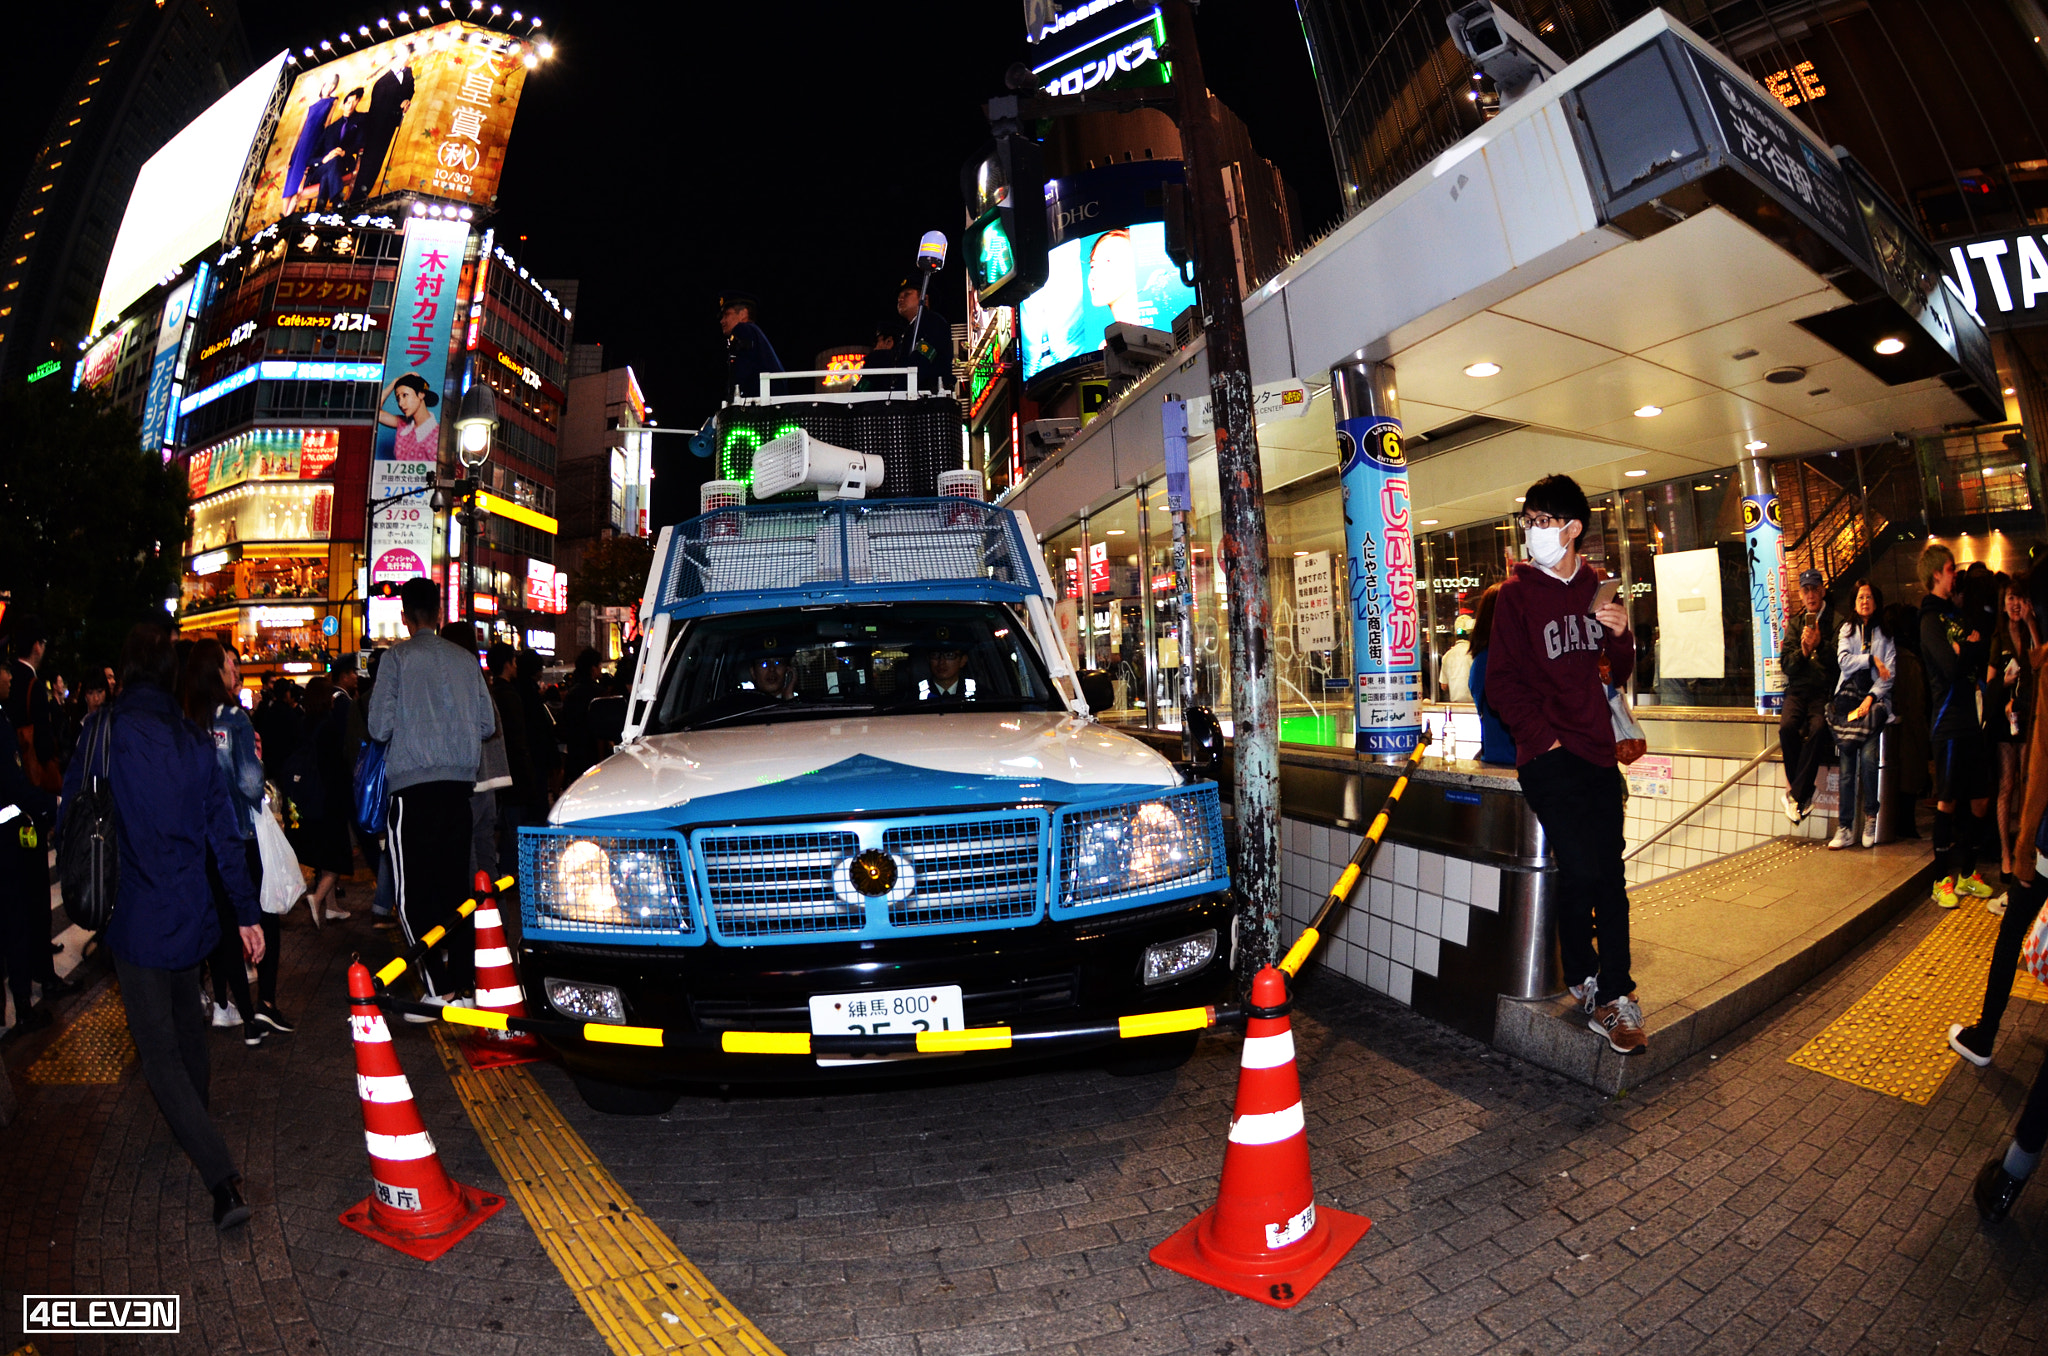 Nikon D7000 sample photo. Tokyo police car in shibuya photography